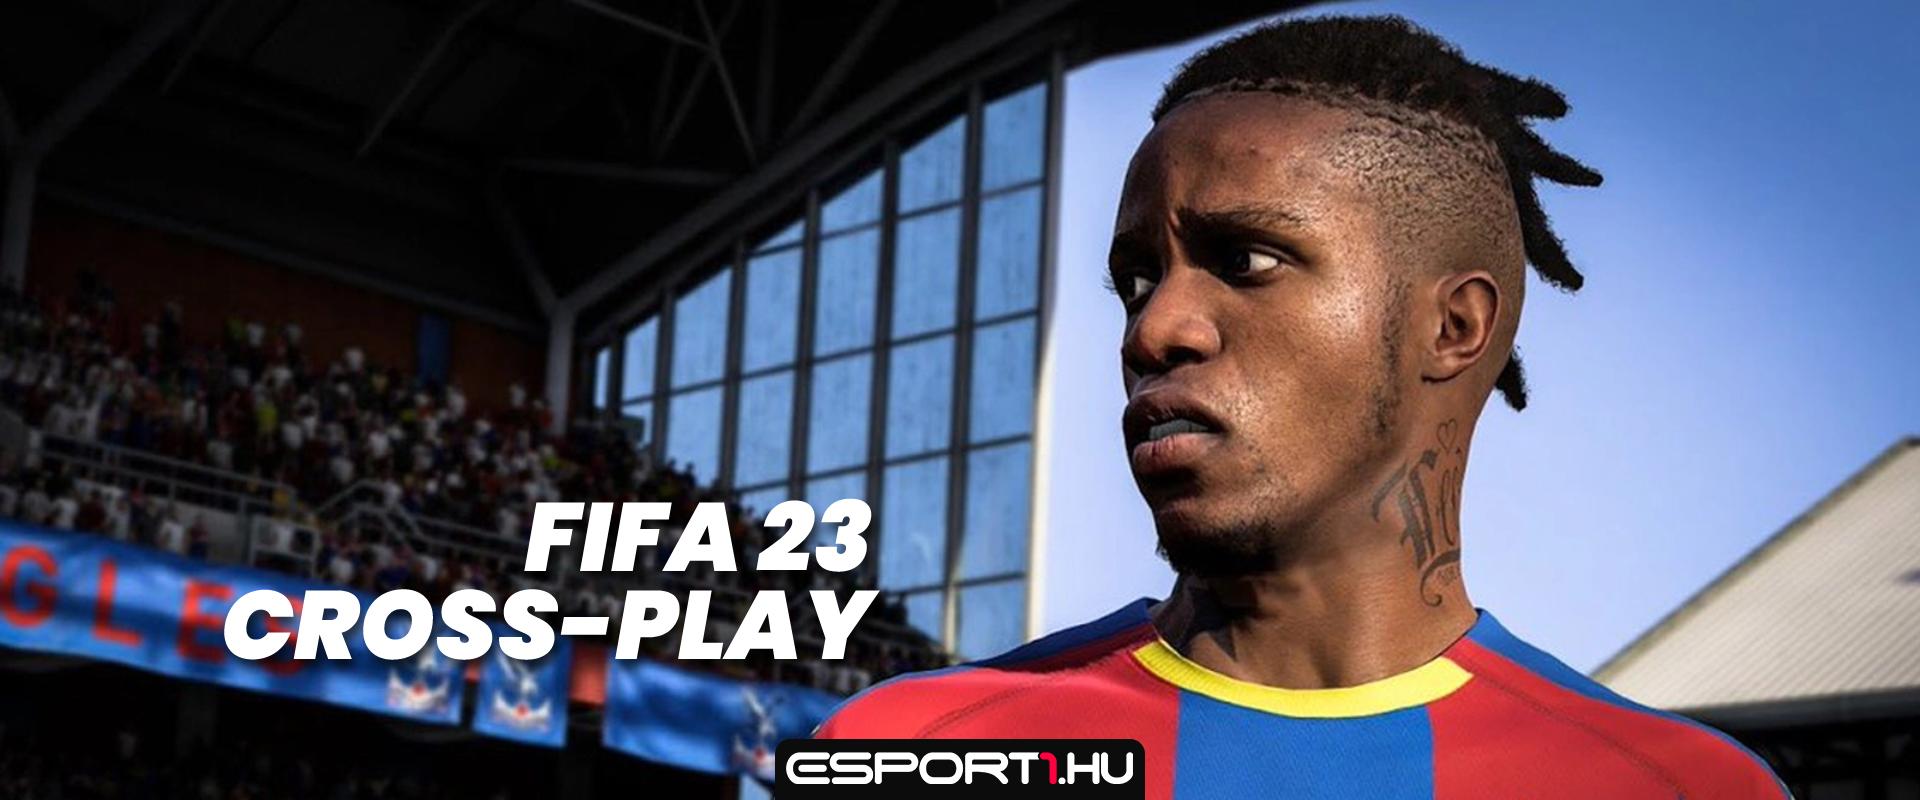 Így fog kinézni a cross-play a FIFA 23-ban